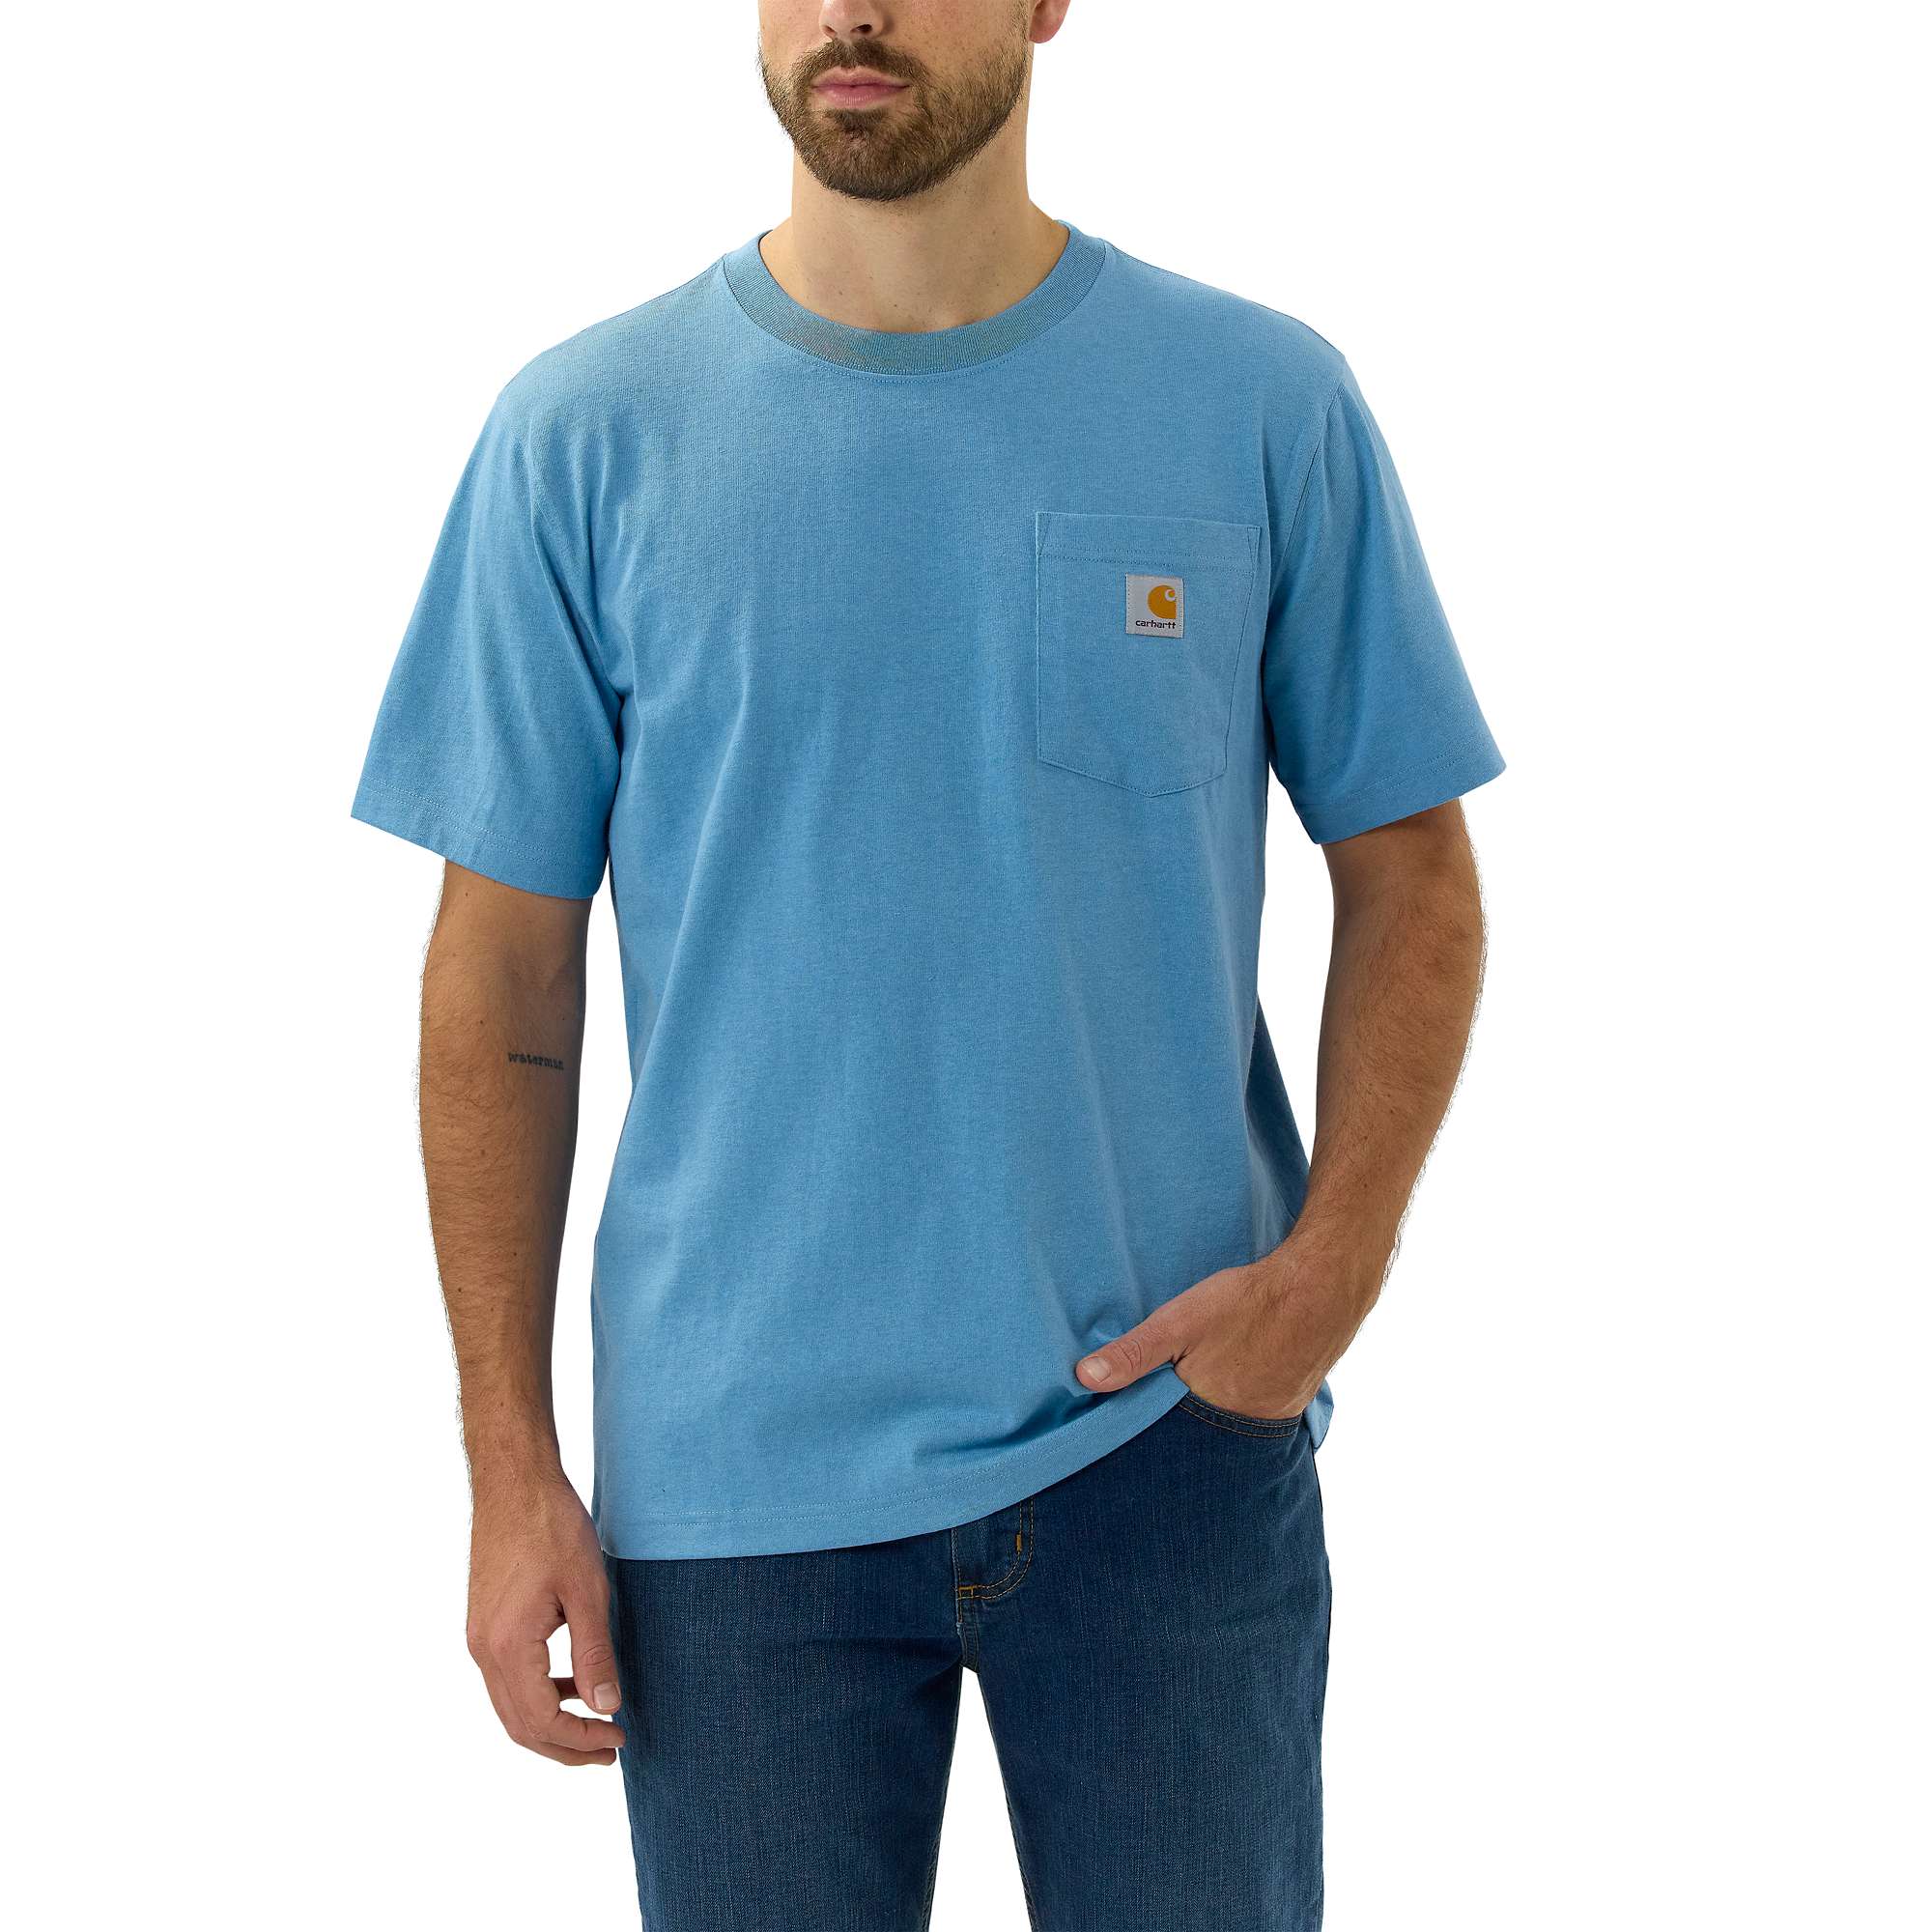 Carhartt Herren T-Shirt K87 mit Brusttasche, Relaxed Fit